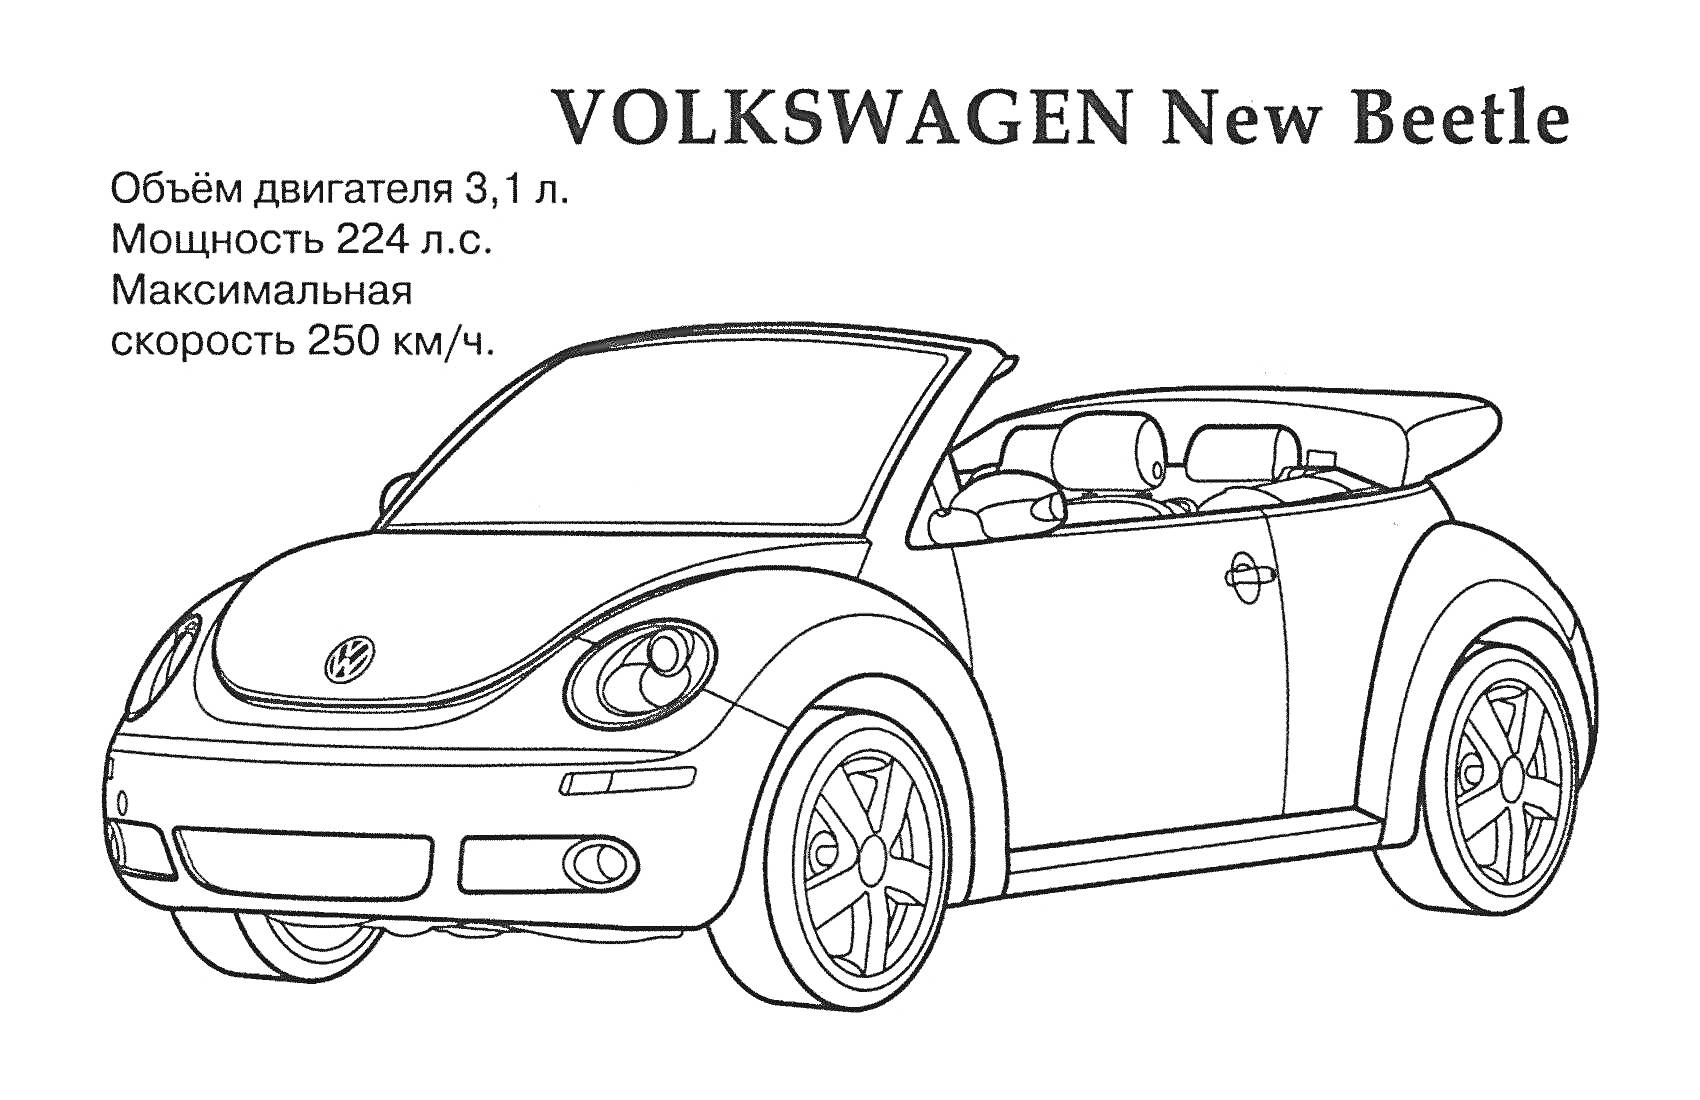 VOLKSWAGEN New Beetle с указанием характеристик (объем двигателя 3,1 л, мощность 224 л.с., максимальная скорость 250 км/ч)